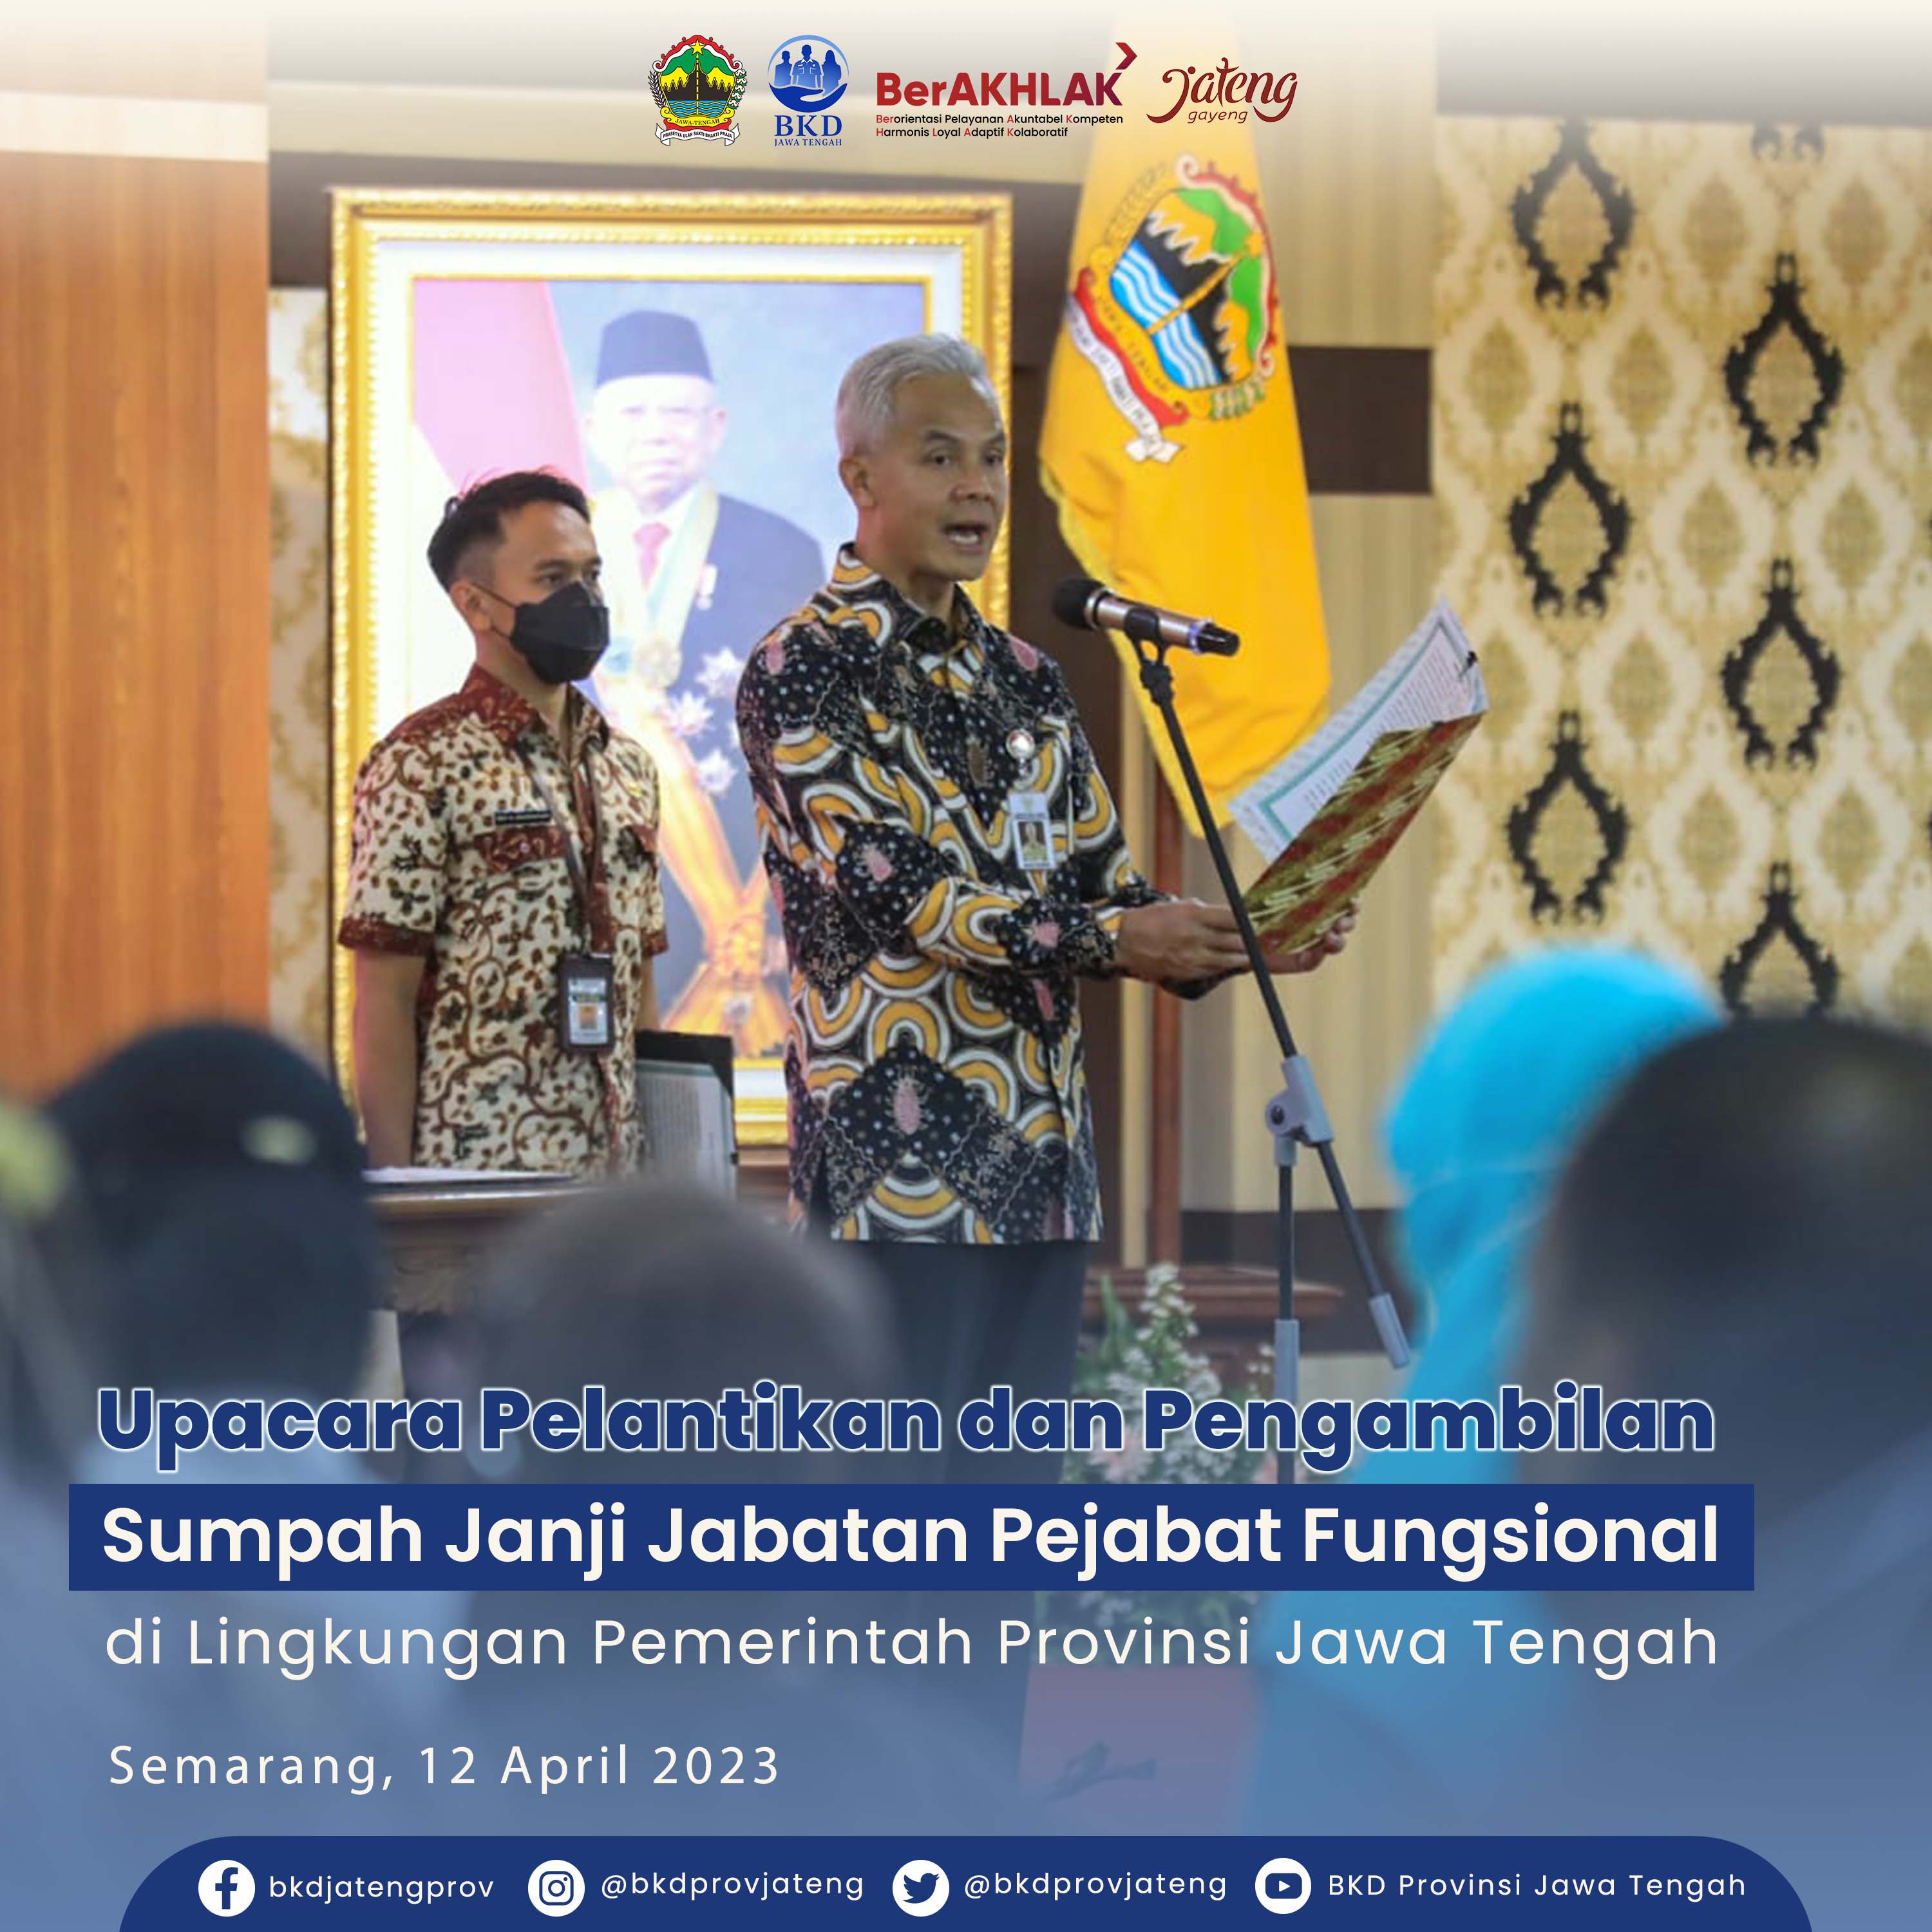 Pelantikan pejabat fungsional kesehatan, guru, dan teknis lainnya di lingkungan Pemerintah Provinsi Jawa Tengah